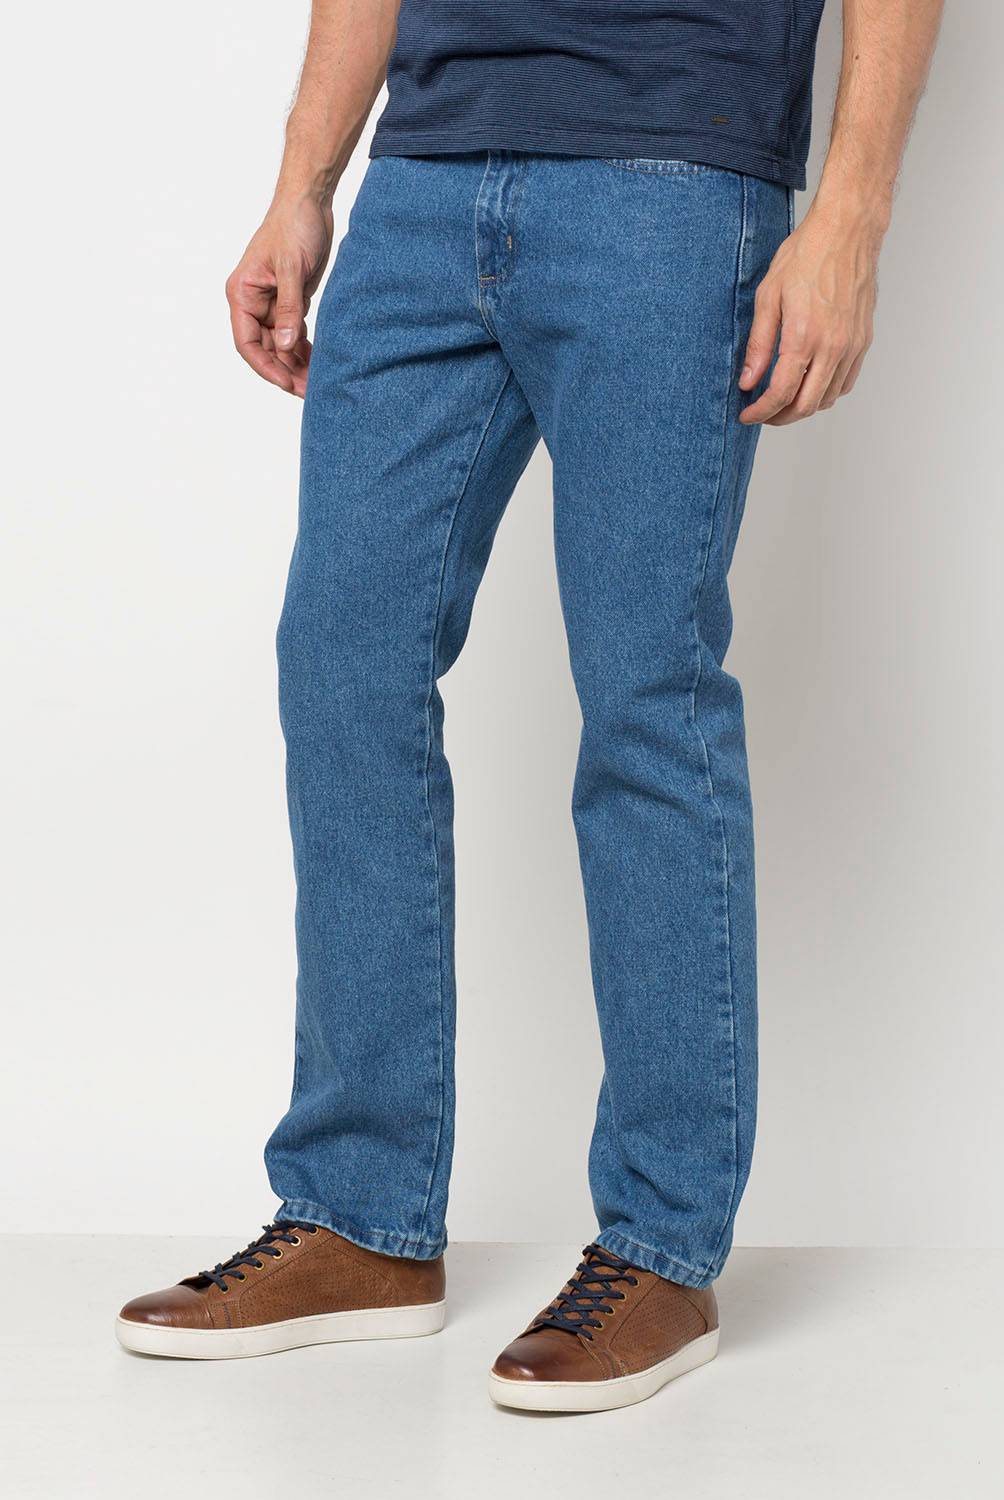 WRANGLER - Jeans Greensboro Regular Fit Hombre Wrangler